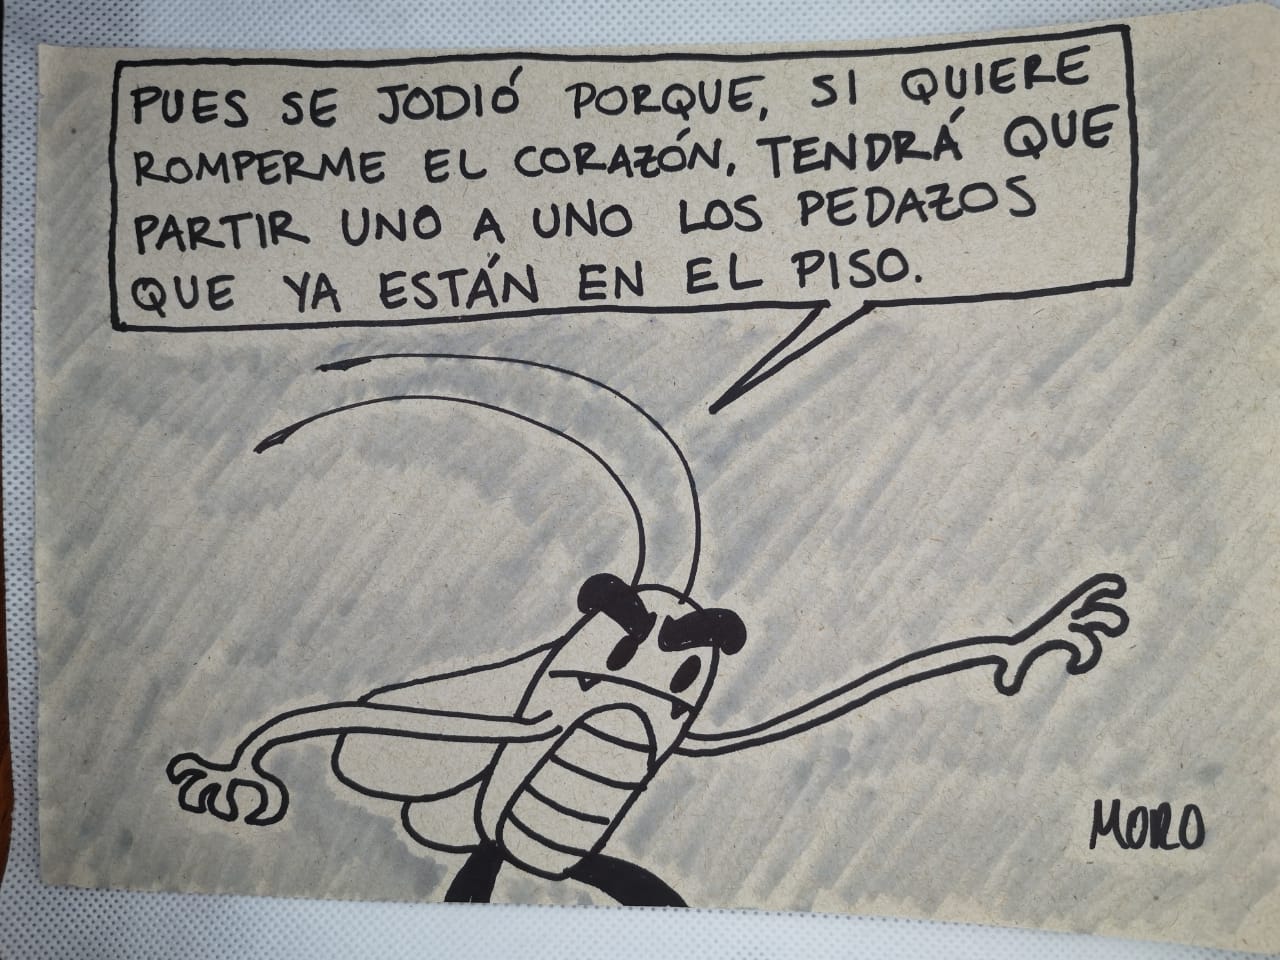 Dibujo artesanal Cucaracho by Moro, pedazos de corazón en el piso.